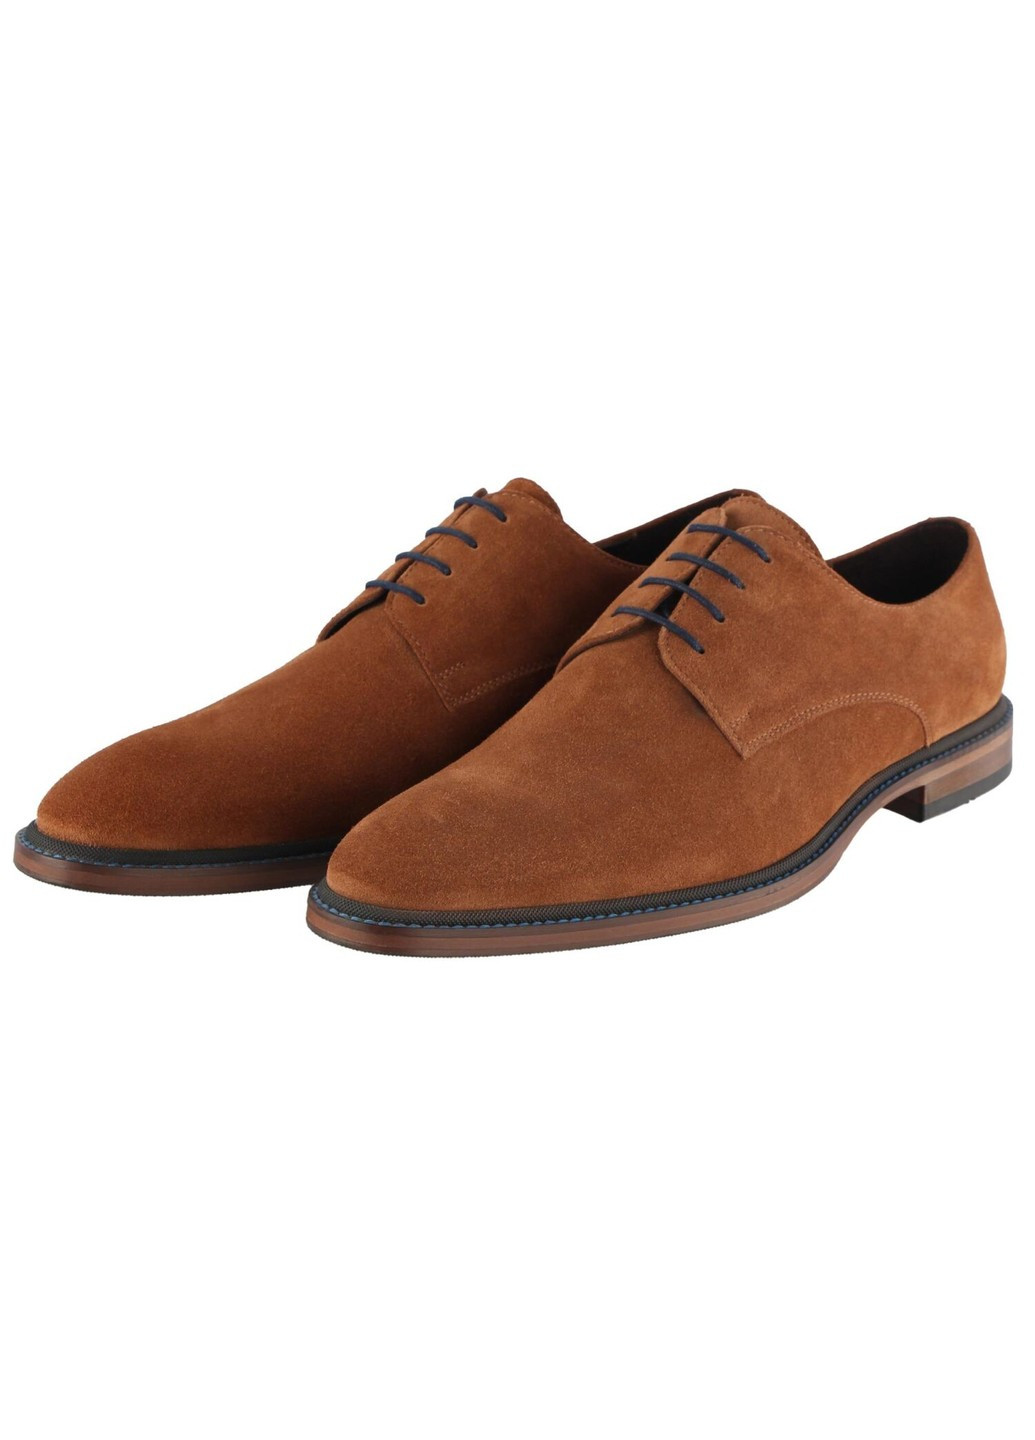 Коричневые мужские классические туфли 5073 - 2 Conhpol на шнурках